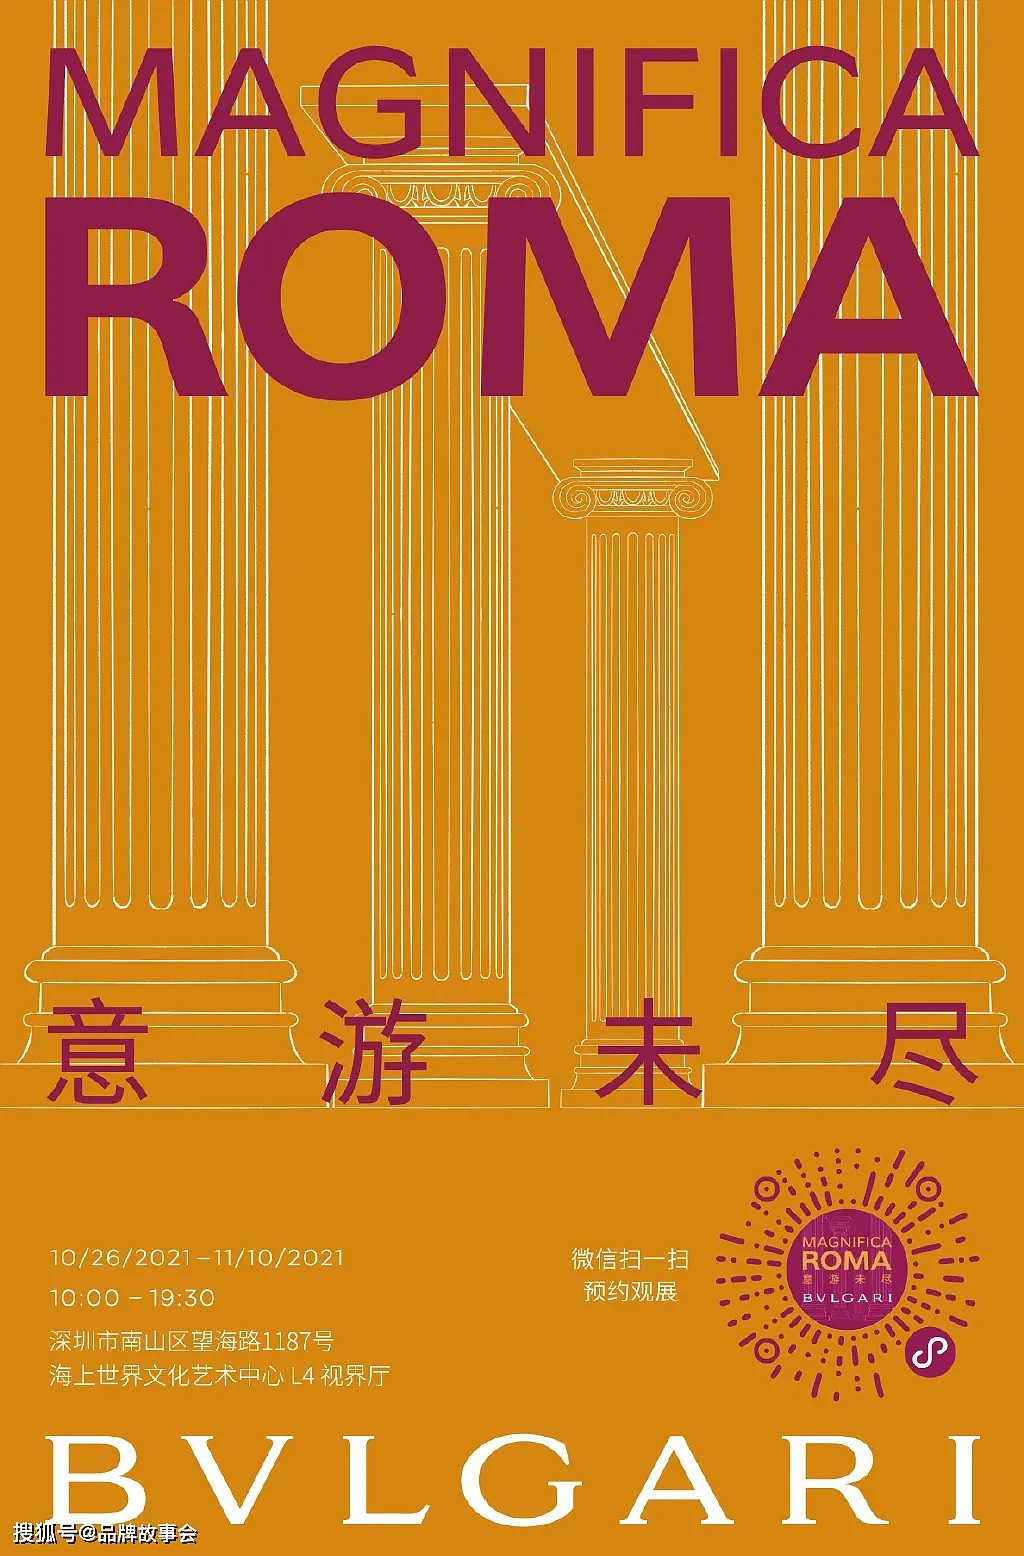 再遇罗马时光 BVLGARI宝格丽MAGNIFICA ROMA意游未尽展览深圳开展 - 11